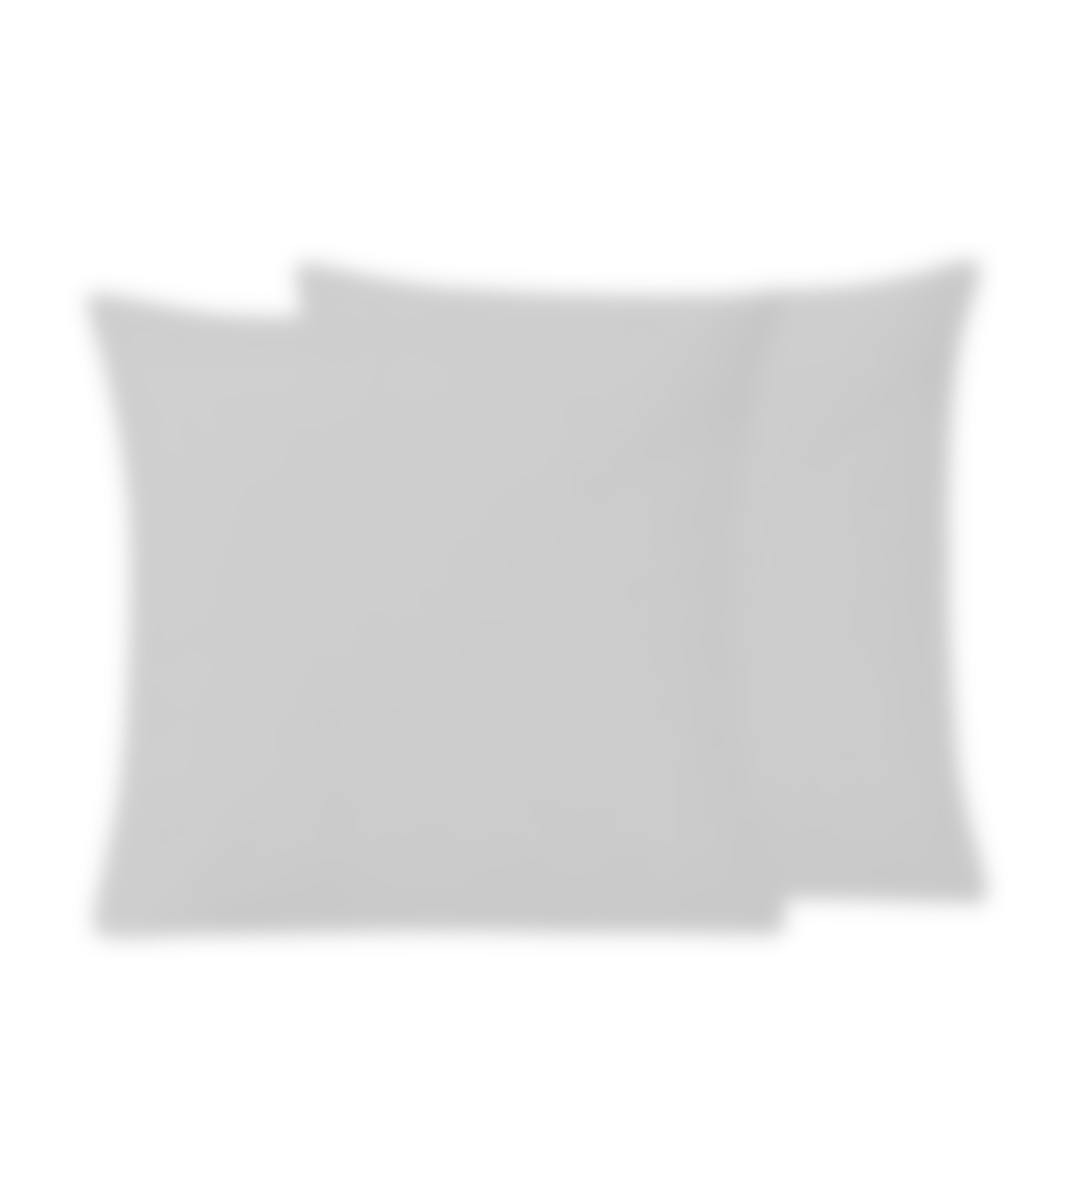 Sleepnight kussensloop grijs perkalkatoen set van 2 50 x 70 cm